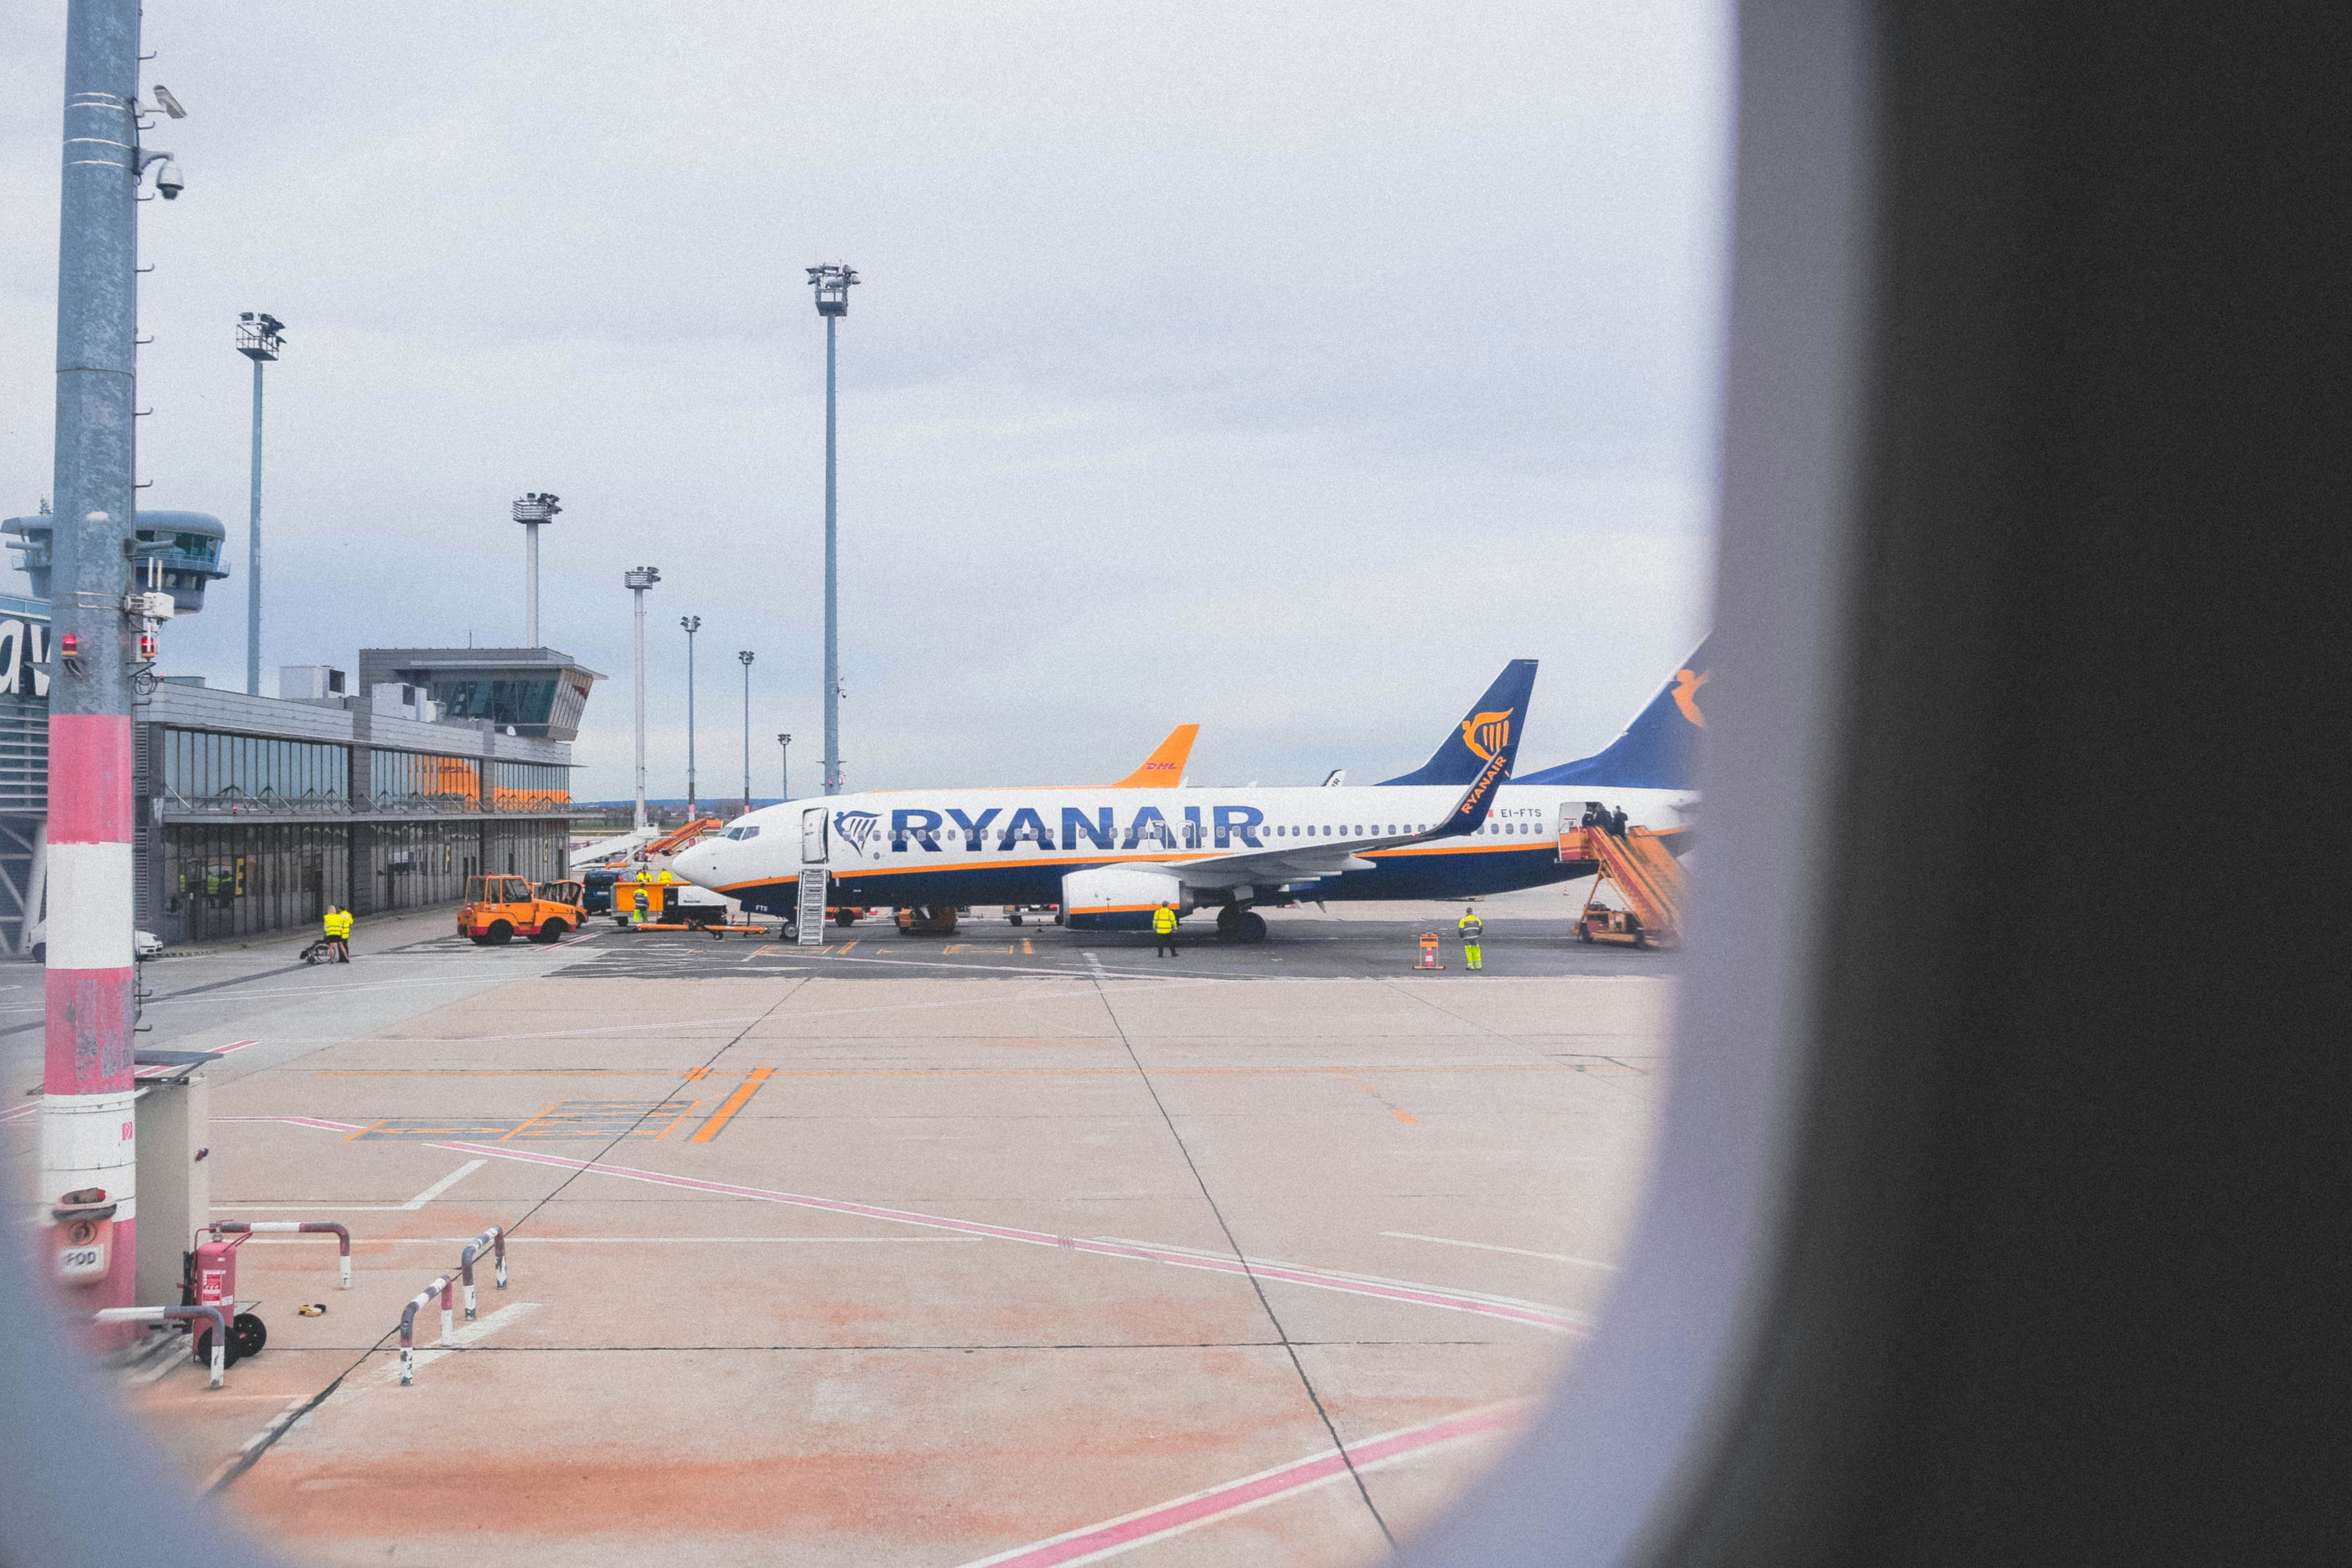 Turbulencie vo finančných výsledkoch leteckých spoločností: Ryanair zaznamenal strmý prepad zisku